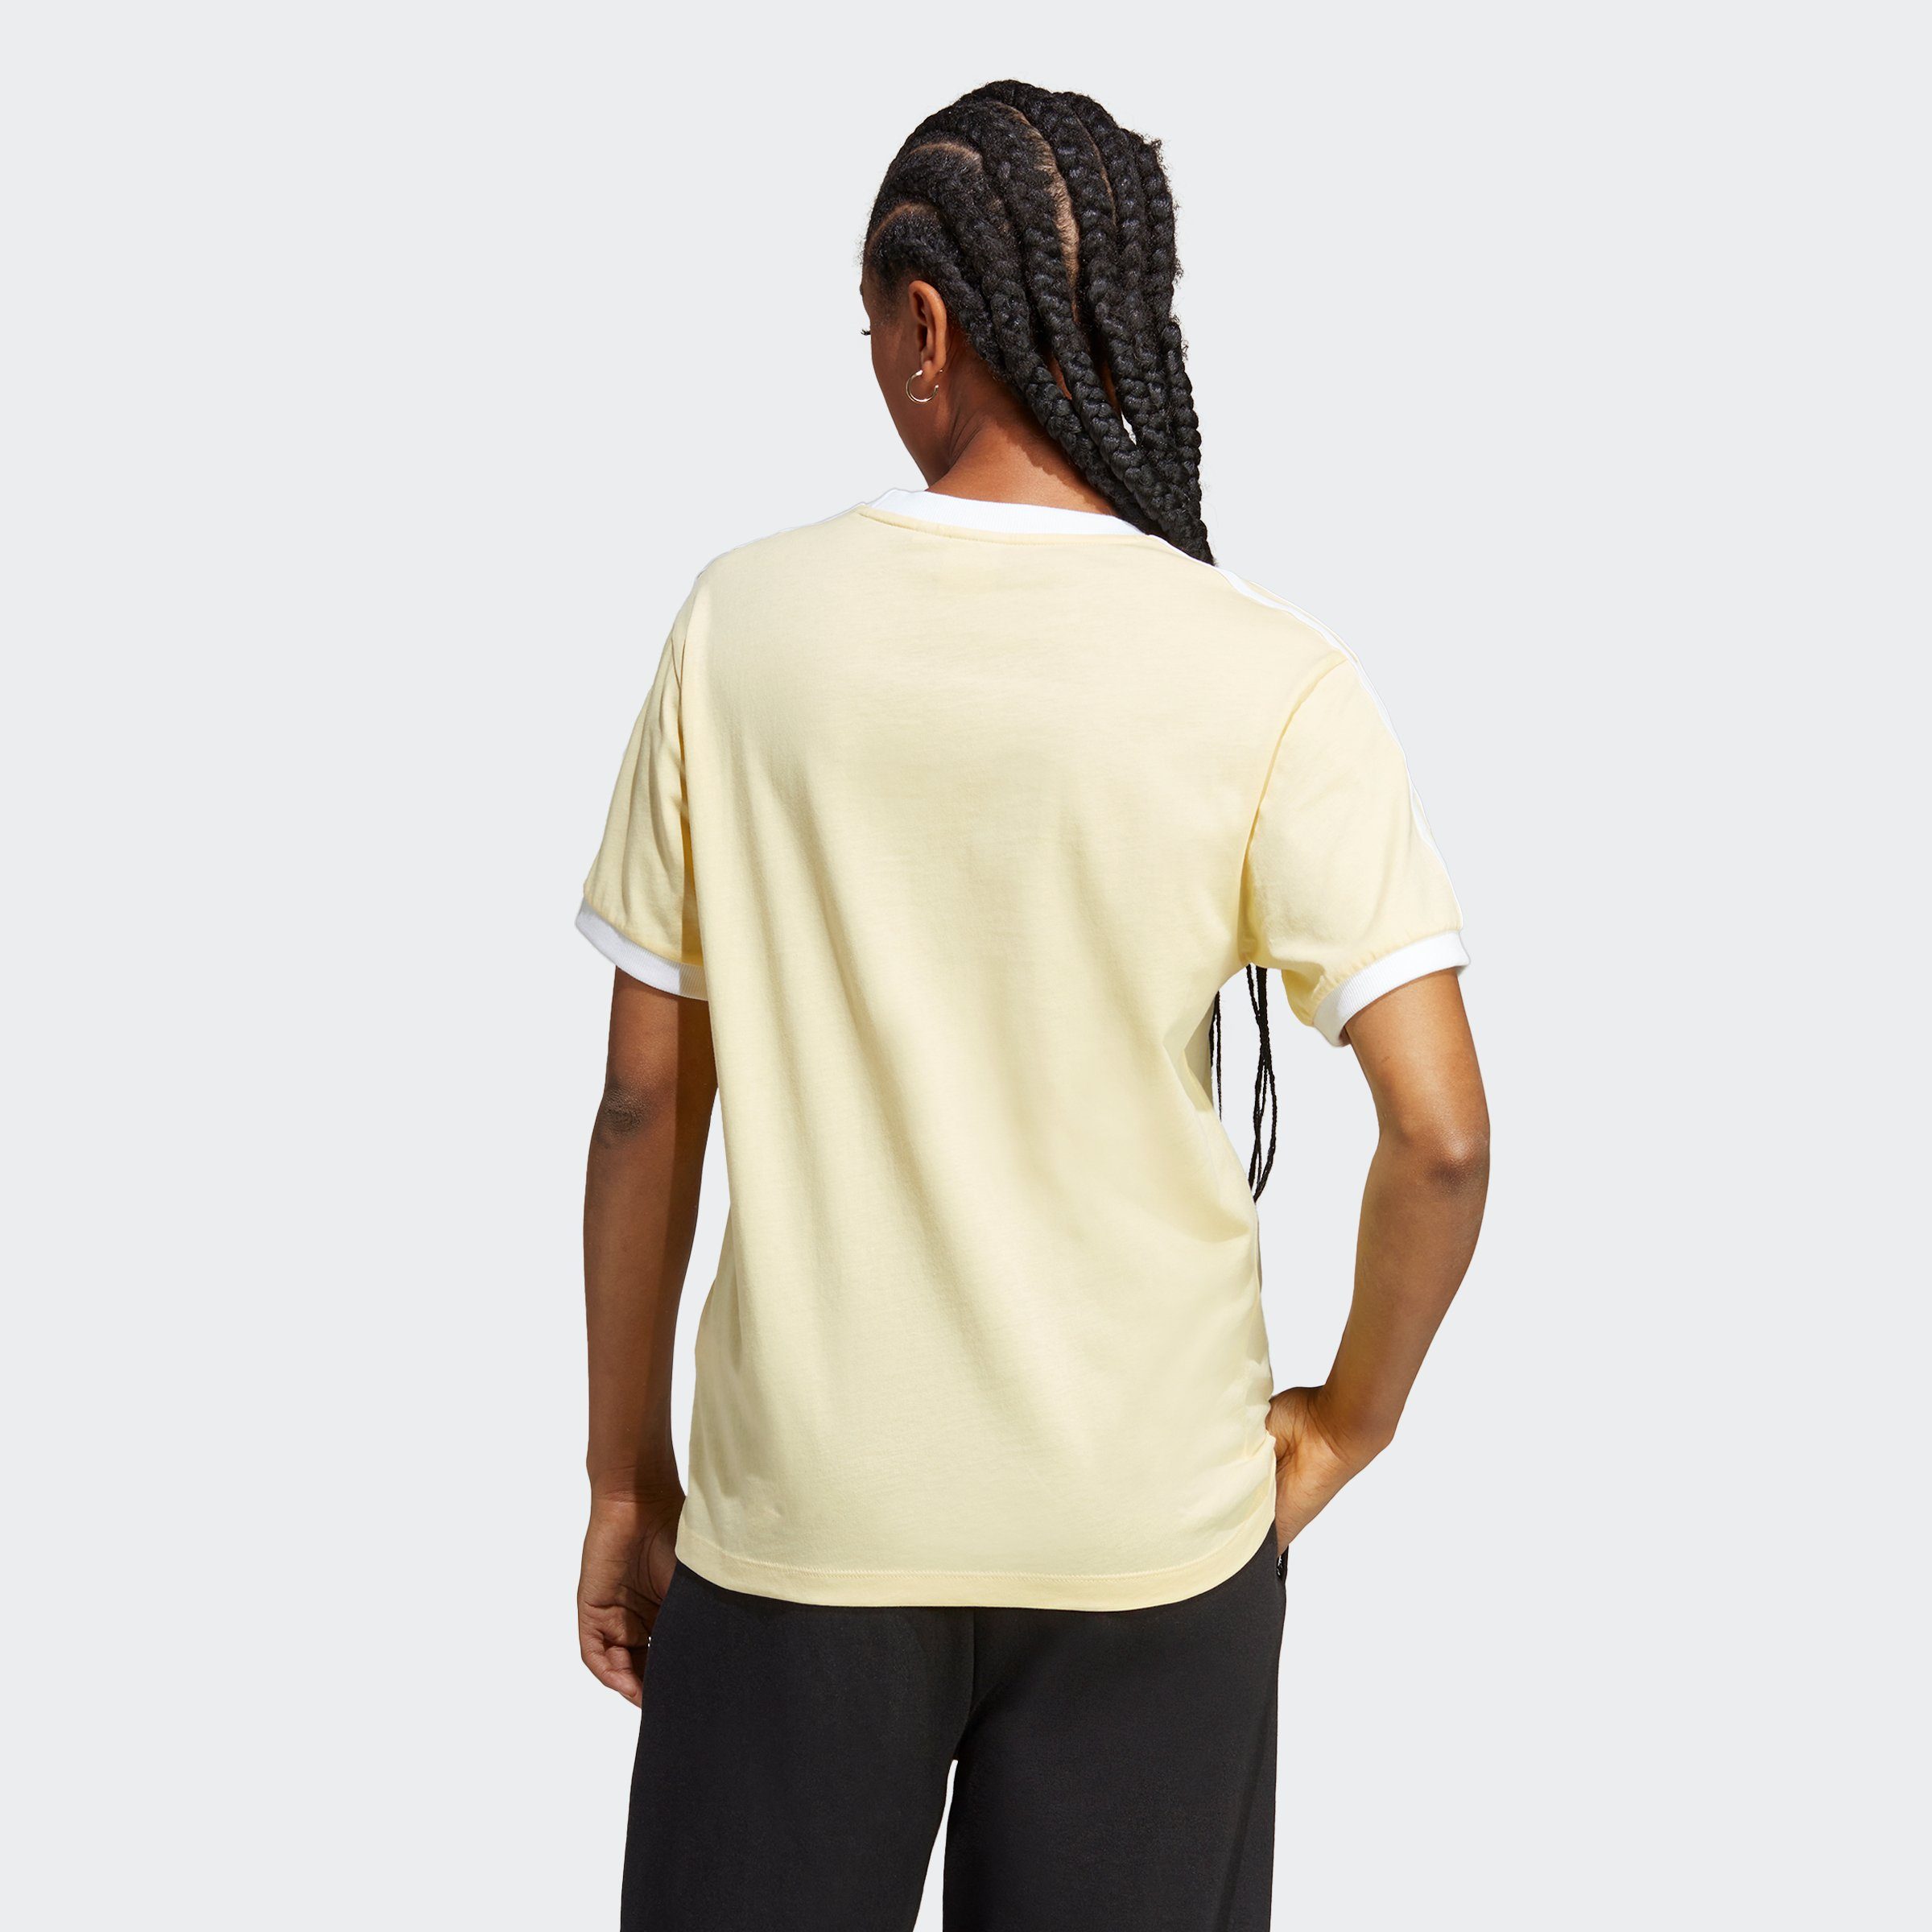 Almost ADICOLOR adidas Yellow CLASSICS T-Shirt Originals 3-STREIFEN